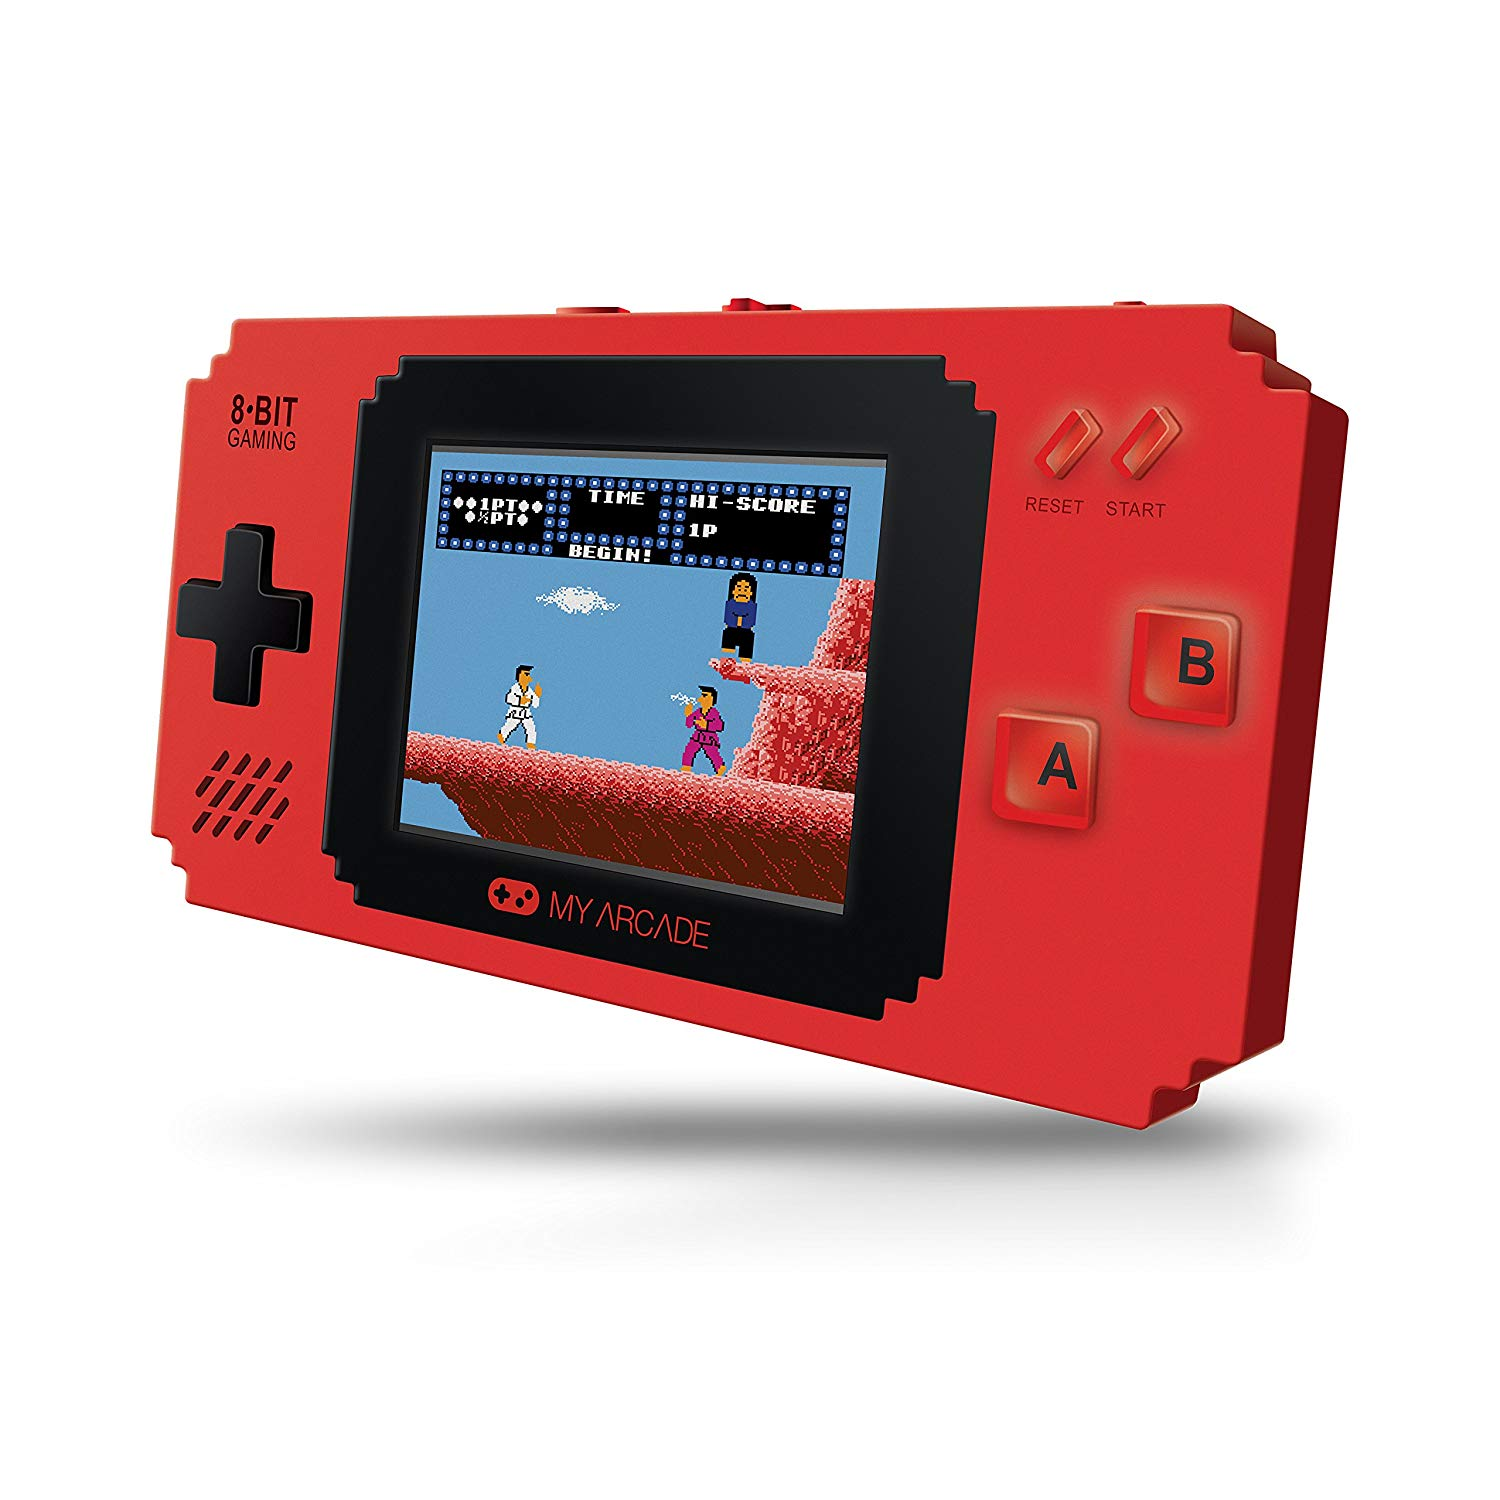 Consola Retro My arcade pixel player 300 juegos 8 bit rojo